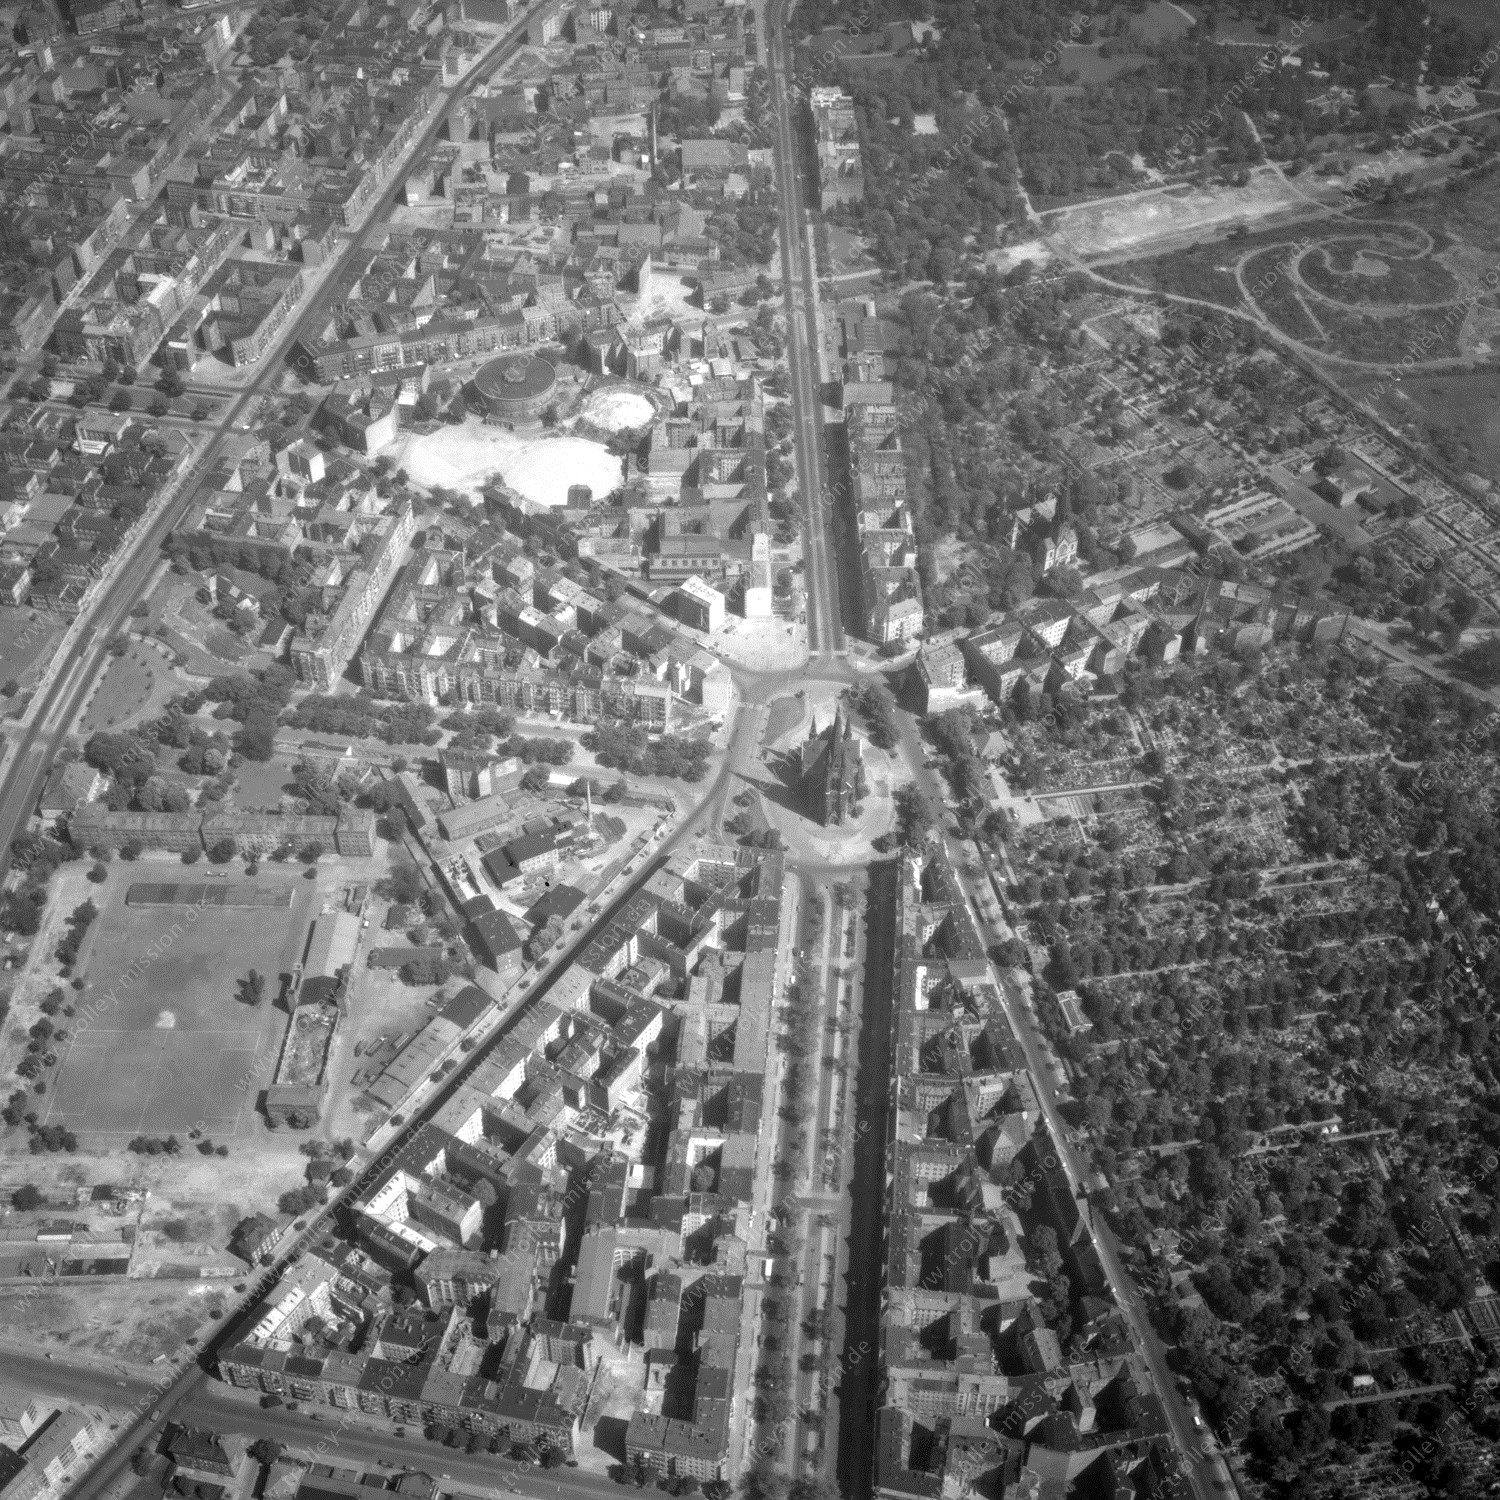 Alte Fotos und Luftbilder von Berlin - Luftbildaufnahme Nr. 03 - Historische Luftaufnahmen von West-Berlin aus dem Jahr 1954 - Flugstrecke Kilo